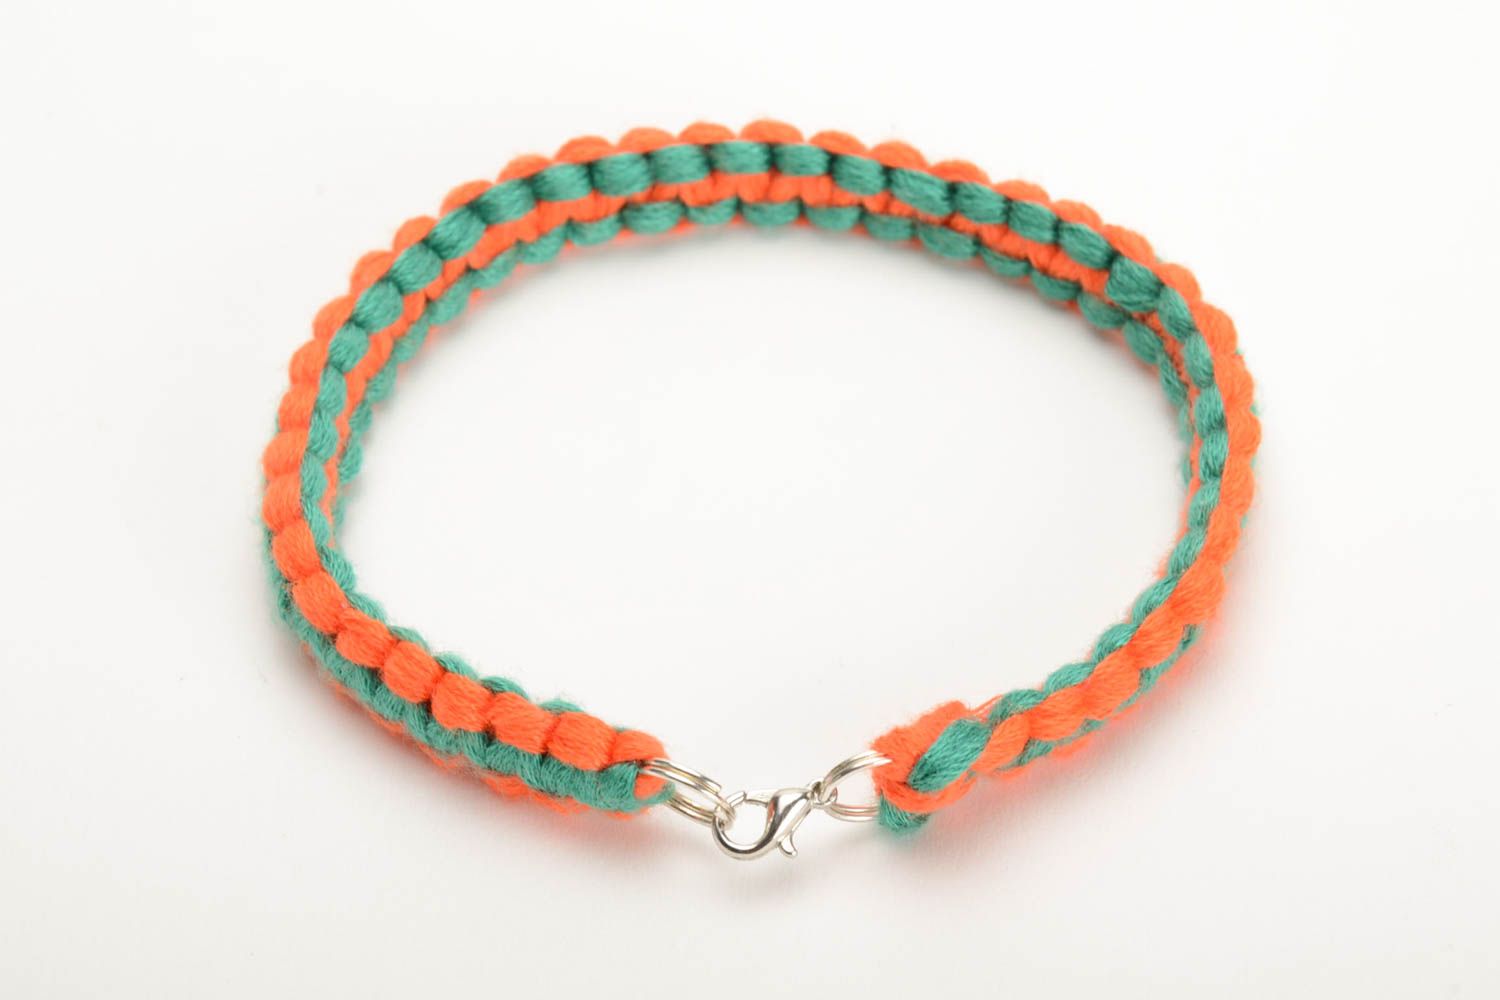 Плетеный браслет из ниток мулине ручной работы тонкий красивый оранжево-зеленый фото 3